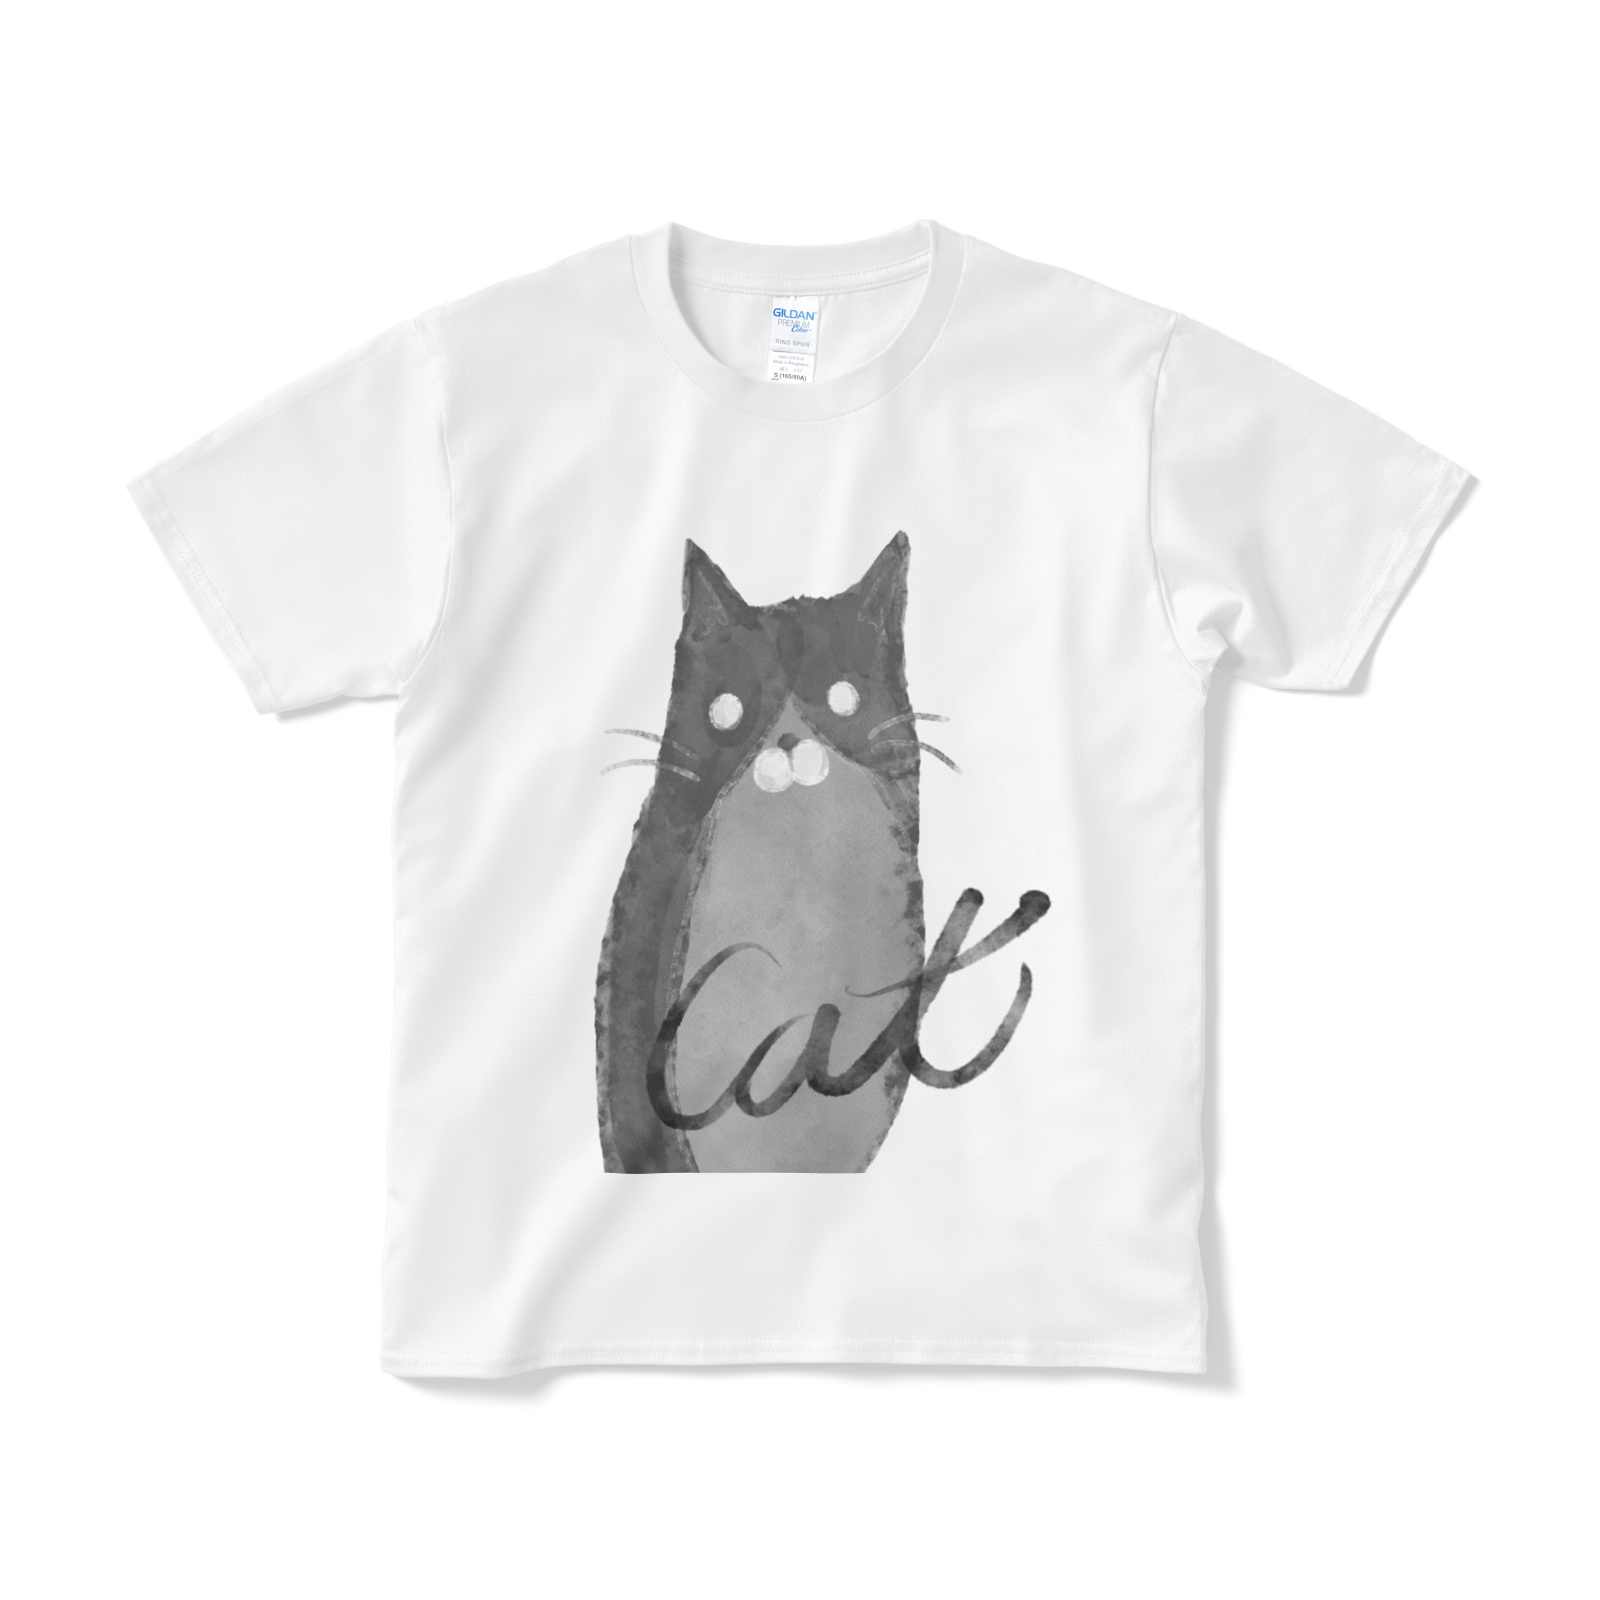 送料無料 水墨画テイストな猫のtシャツ Pixivfactory直送 百猫堂 Momonekodo